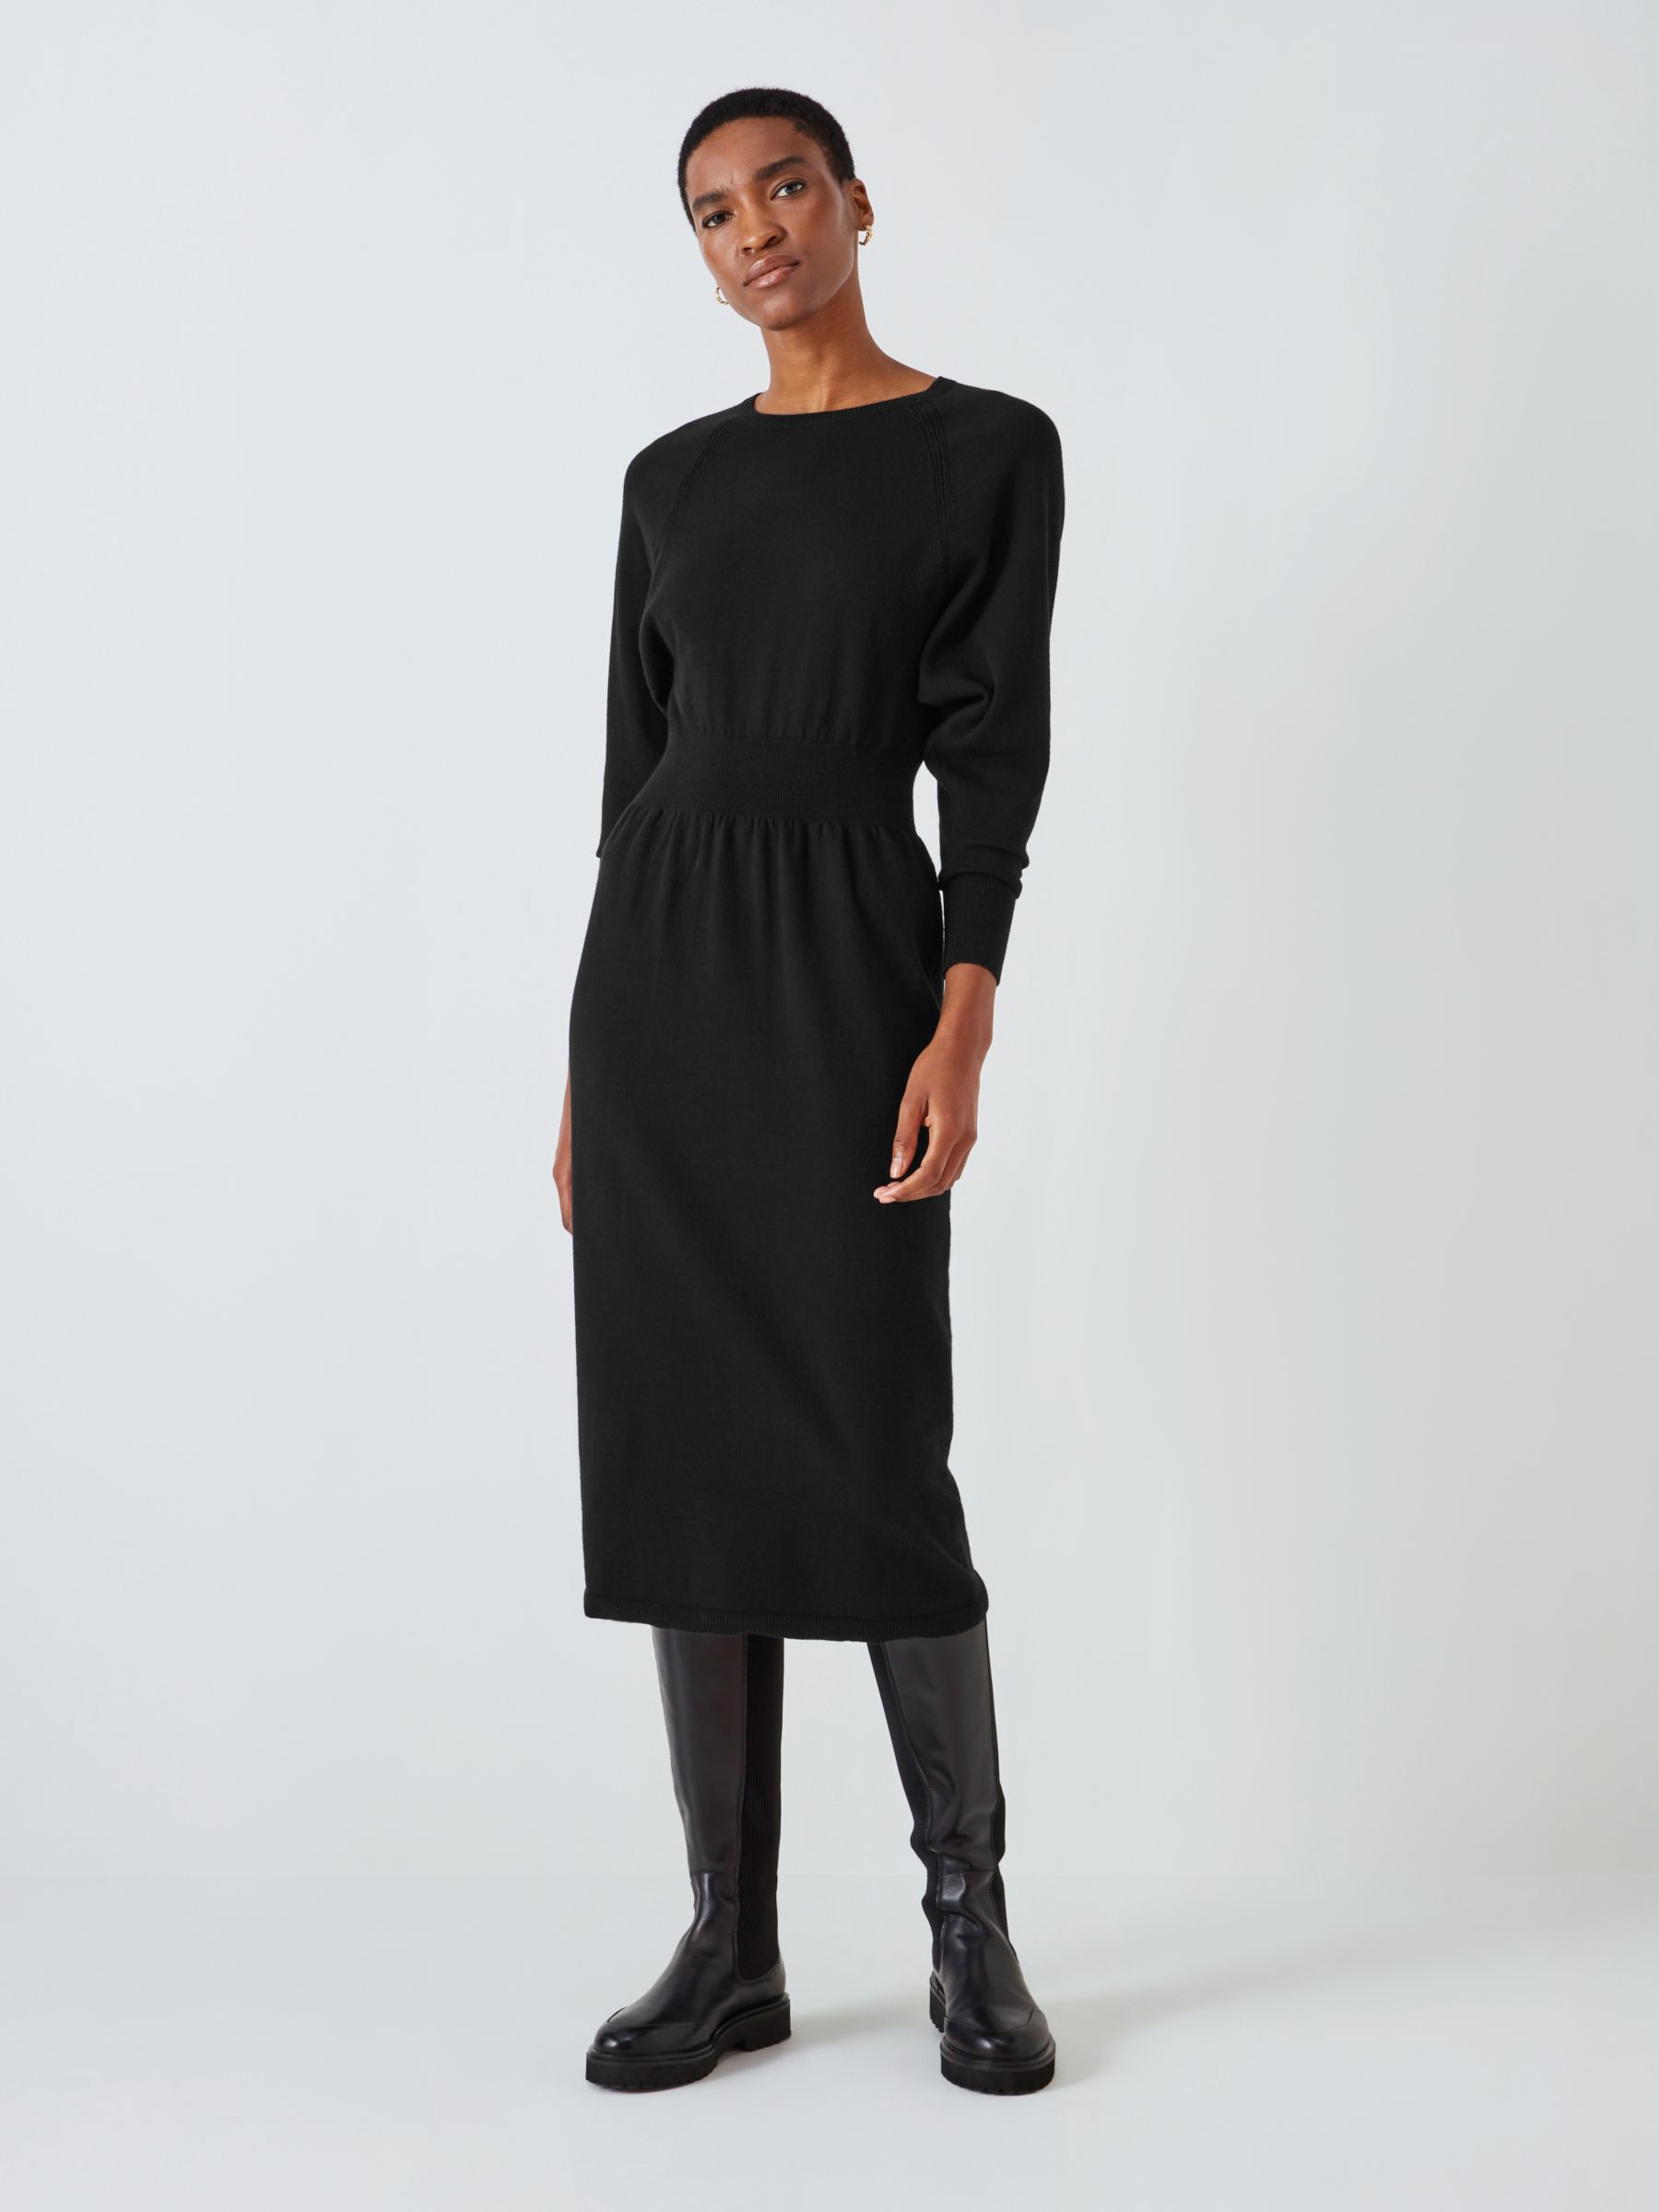 John Lewis Knitted Midi Dress, Black at John Lewis & Partners